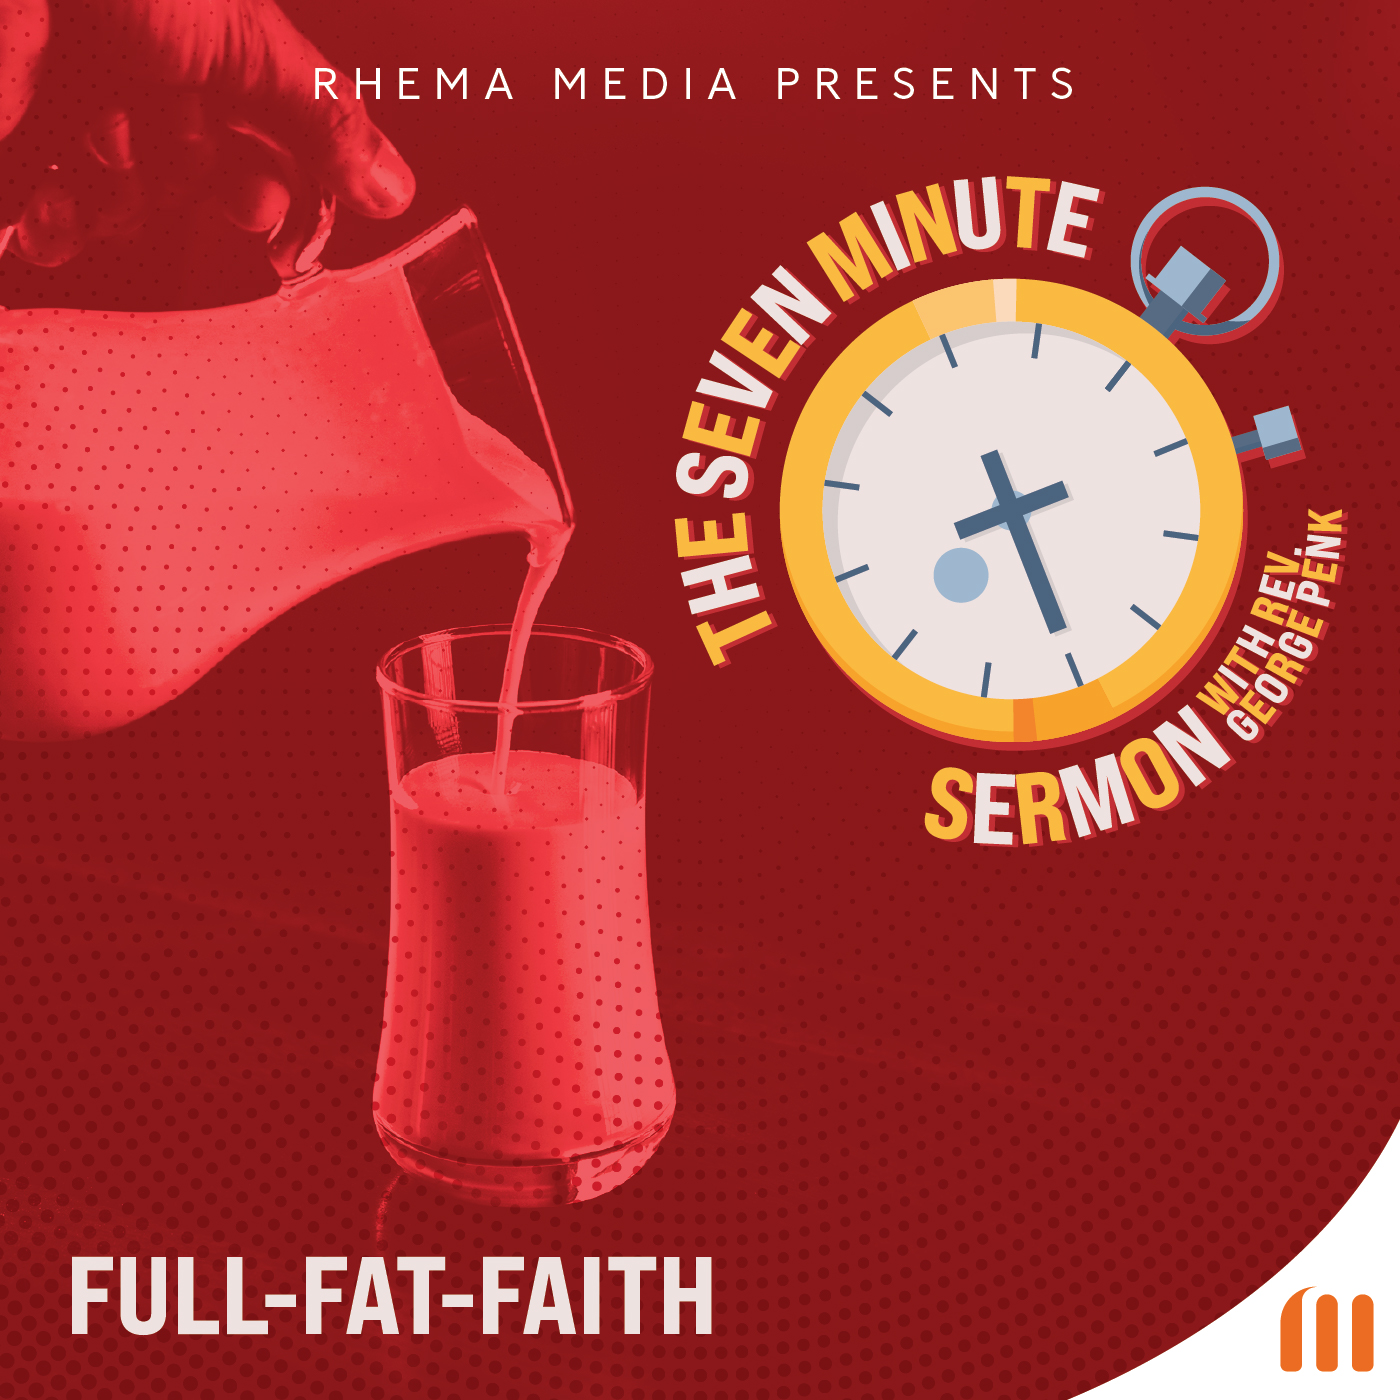 Full-fat faith